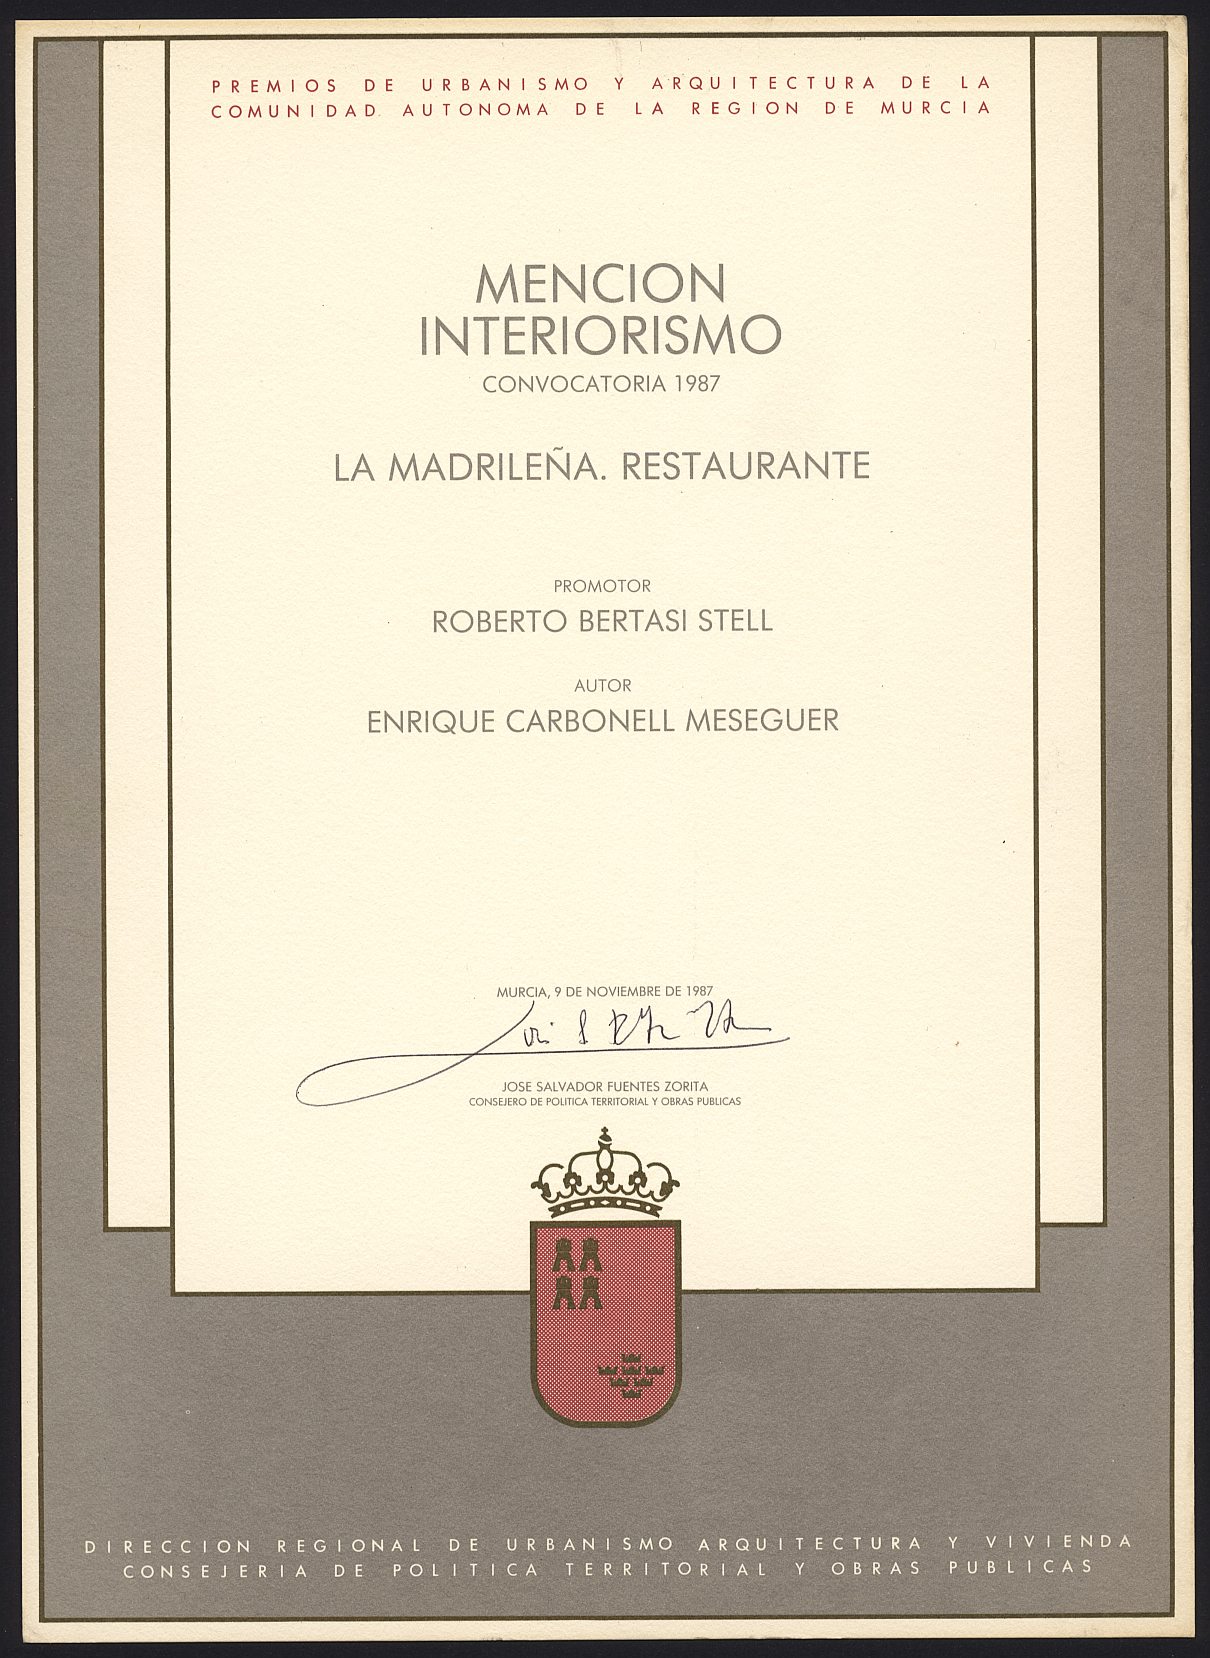 Diploma de Mención de Interiorismo a Enrique Carbonell por el restaurante La Madrileña, de los Premios de Urbanismo y Arquitectura de la Región de Murcia.